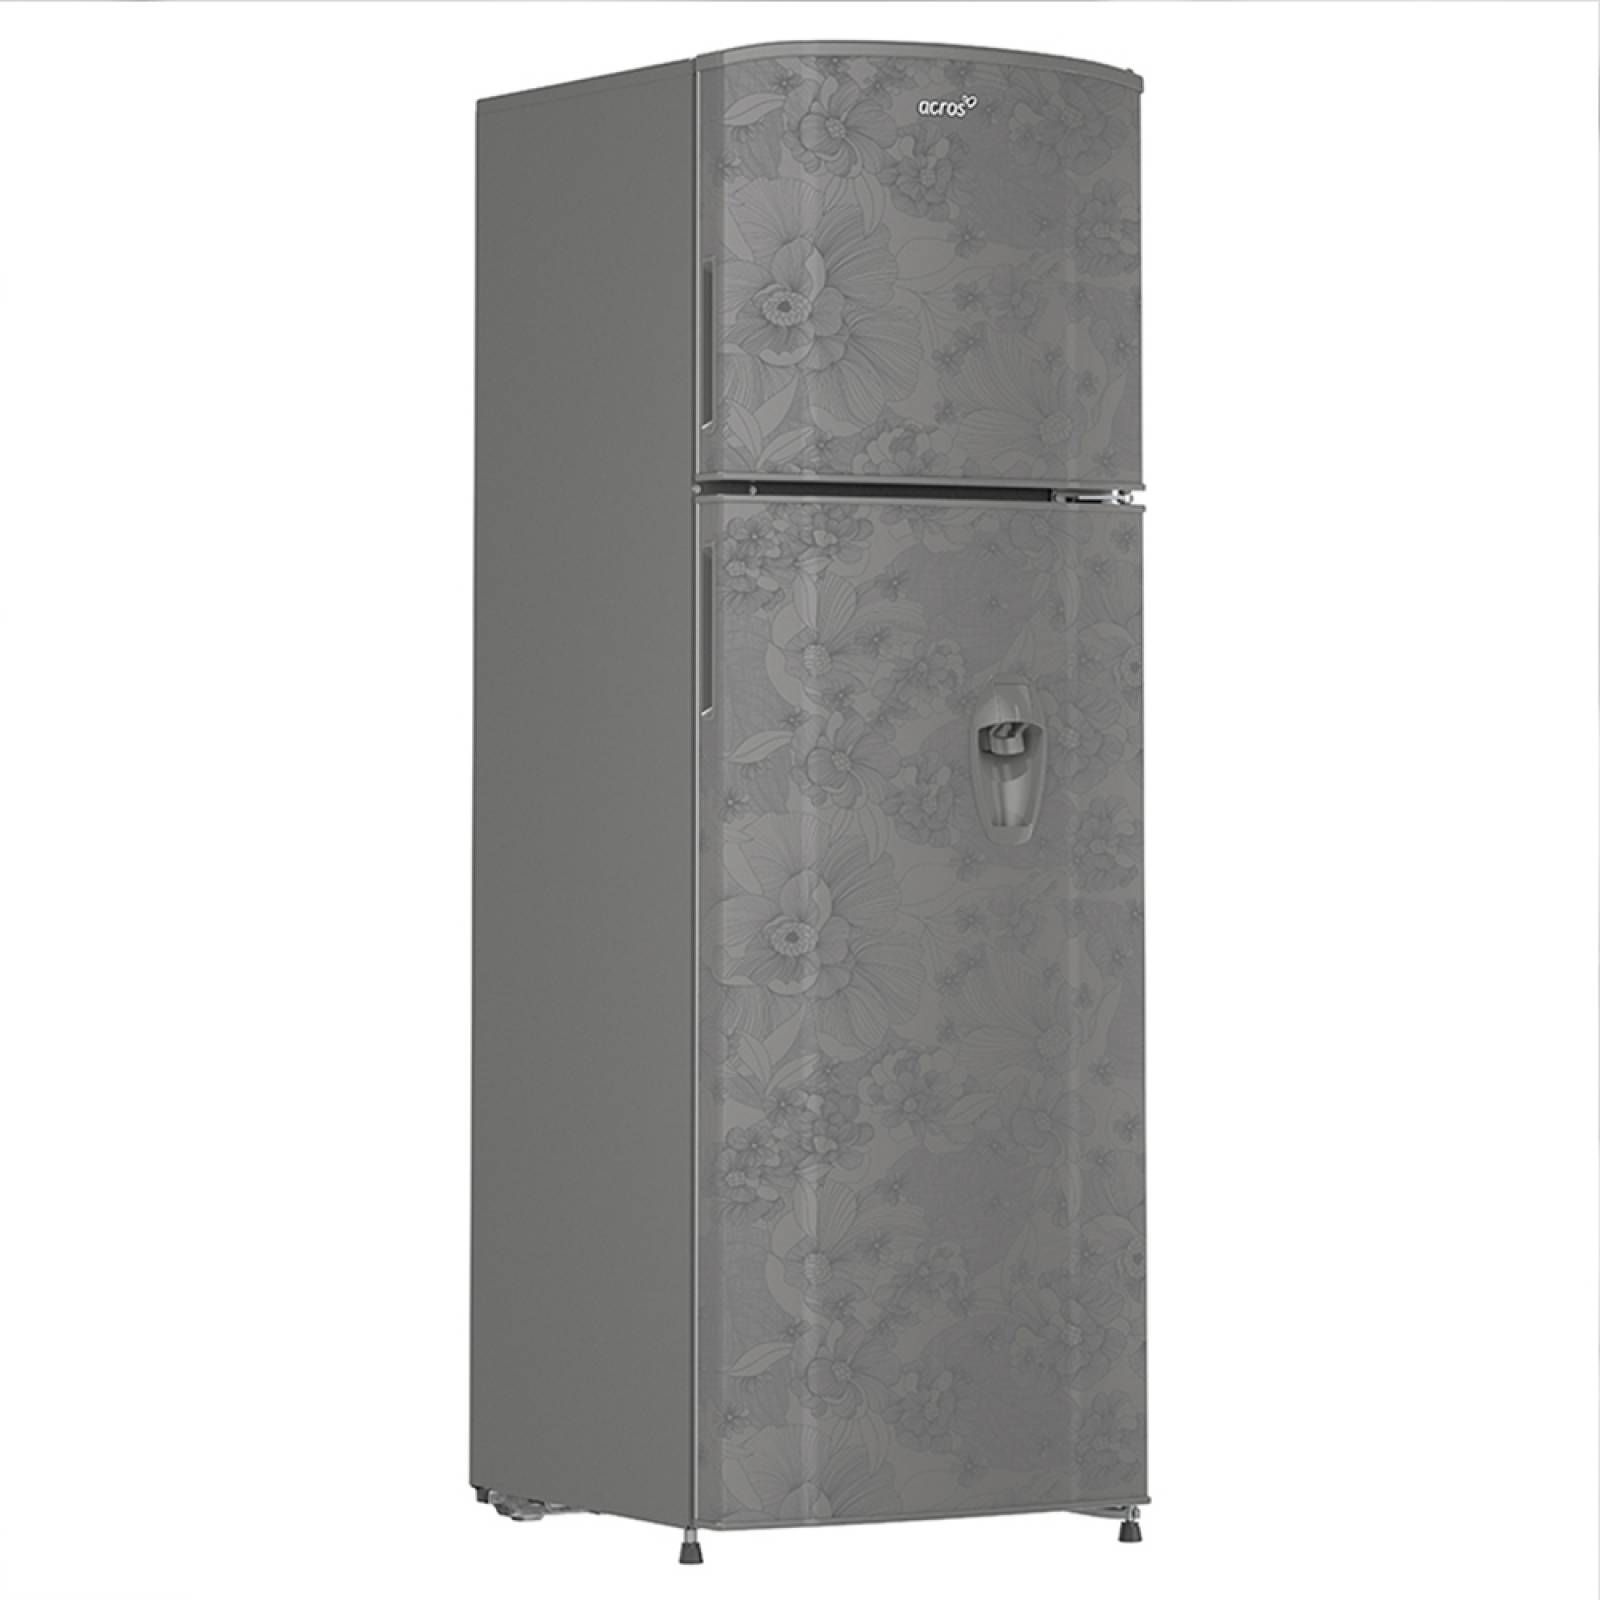 Refrigerador 2 Puertas 250.00 L Platino Floral Acros